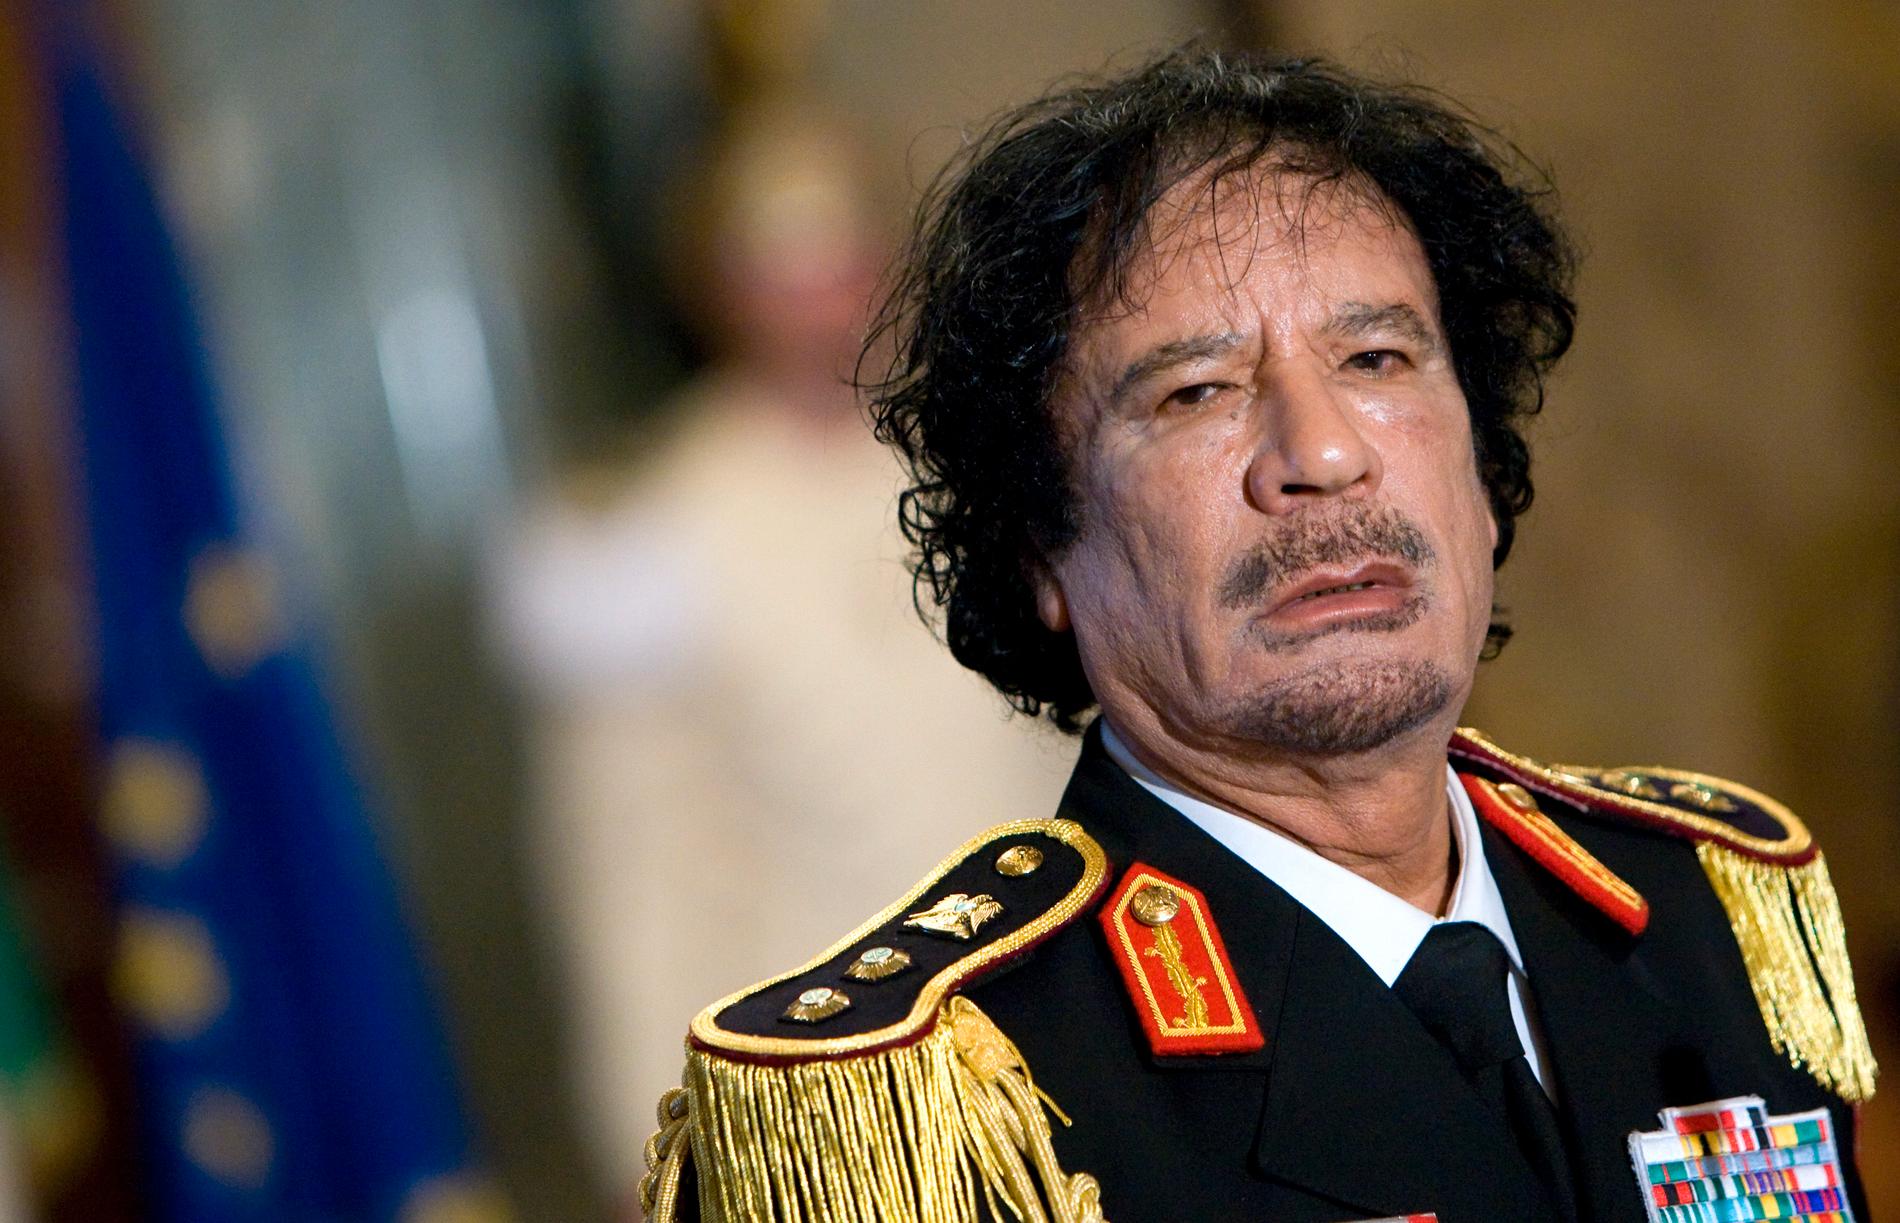 Tidigare diktatorn Moammar Gaddafi, bild tagen 2009.